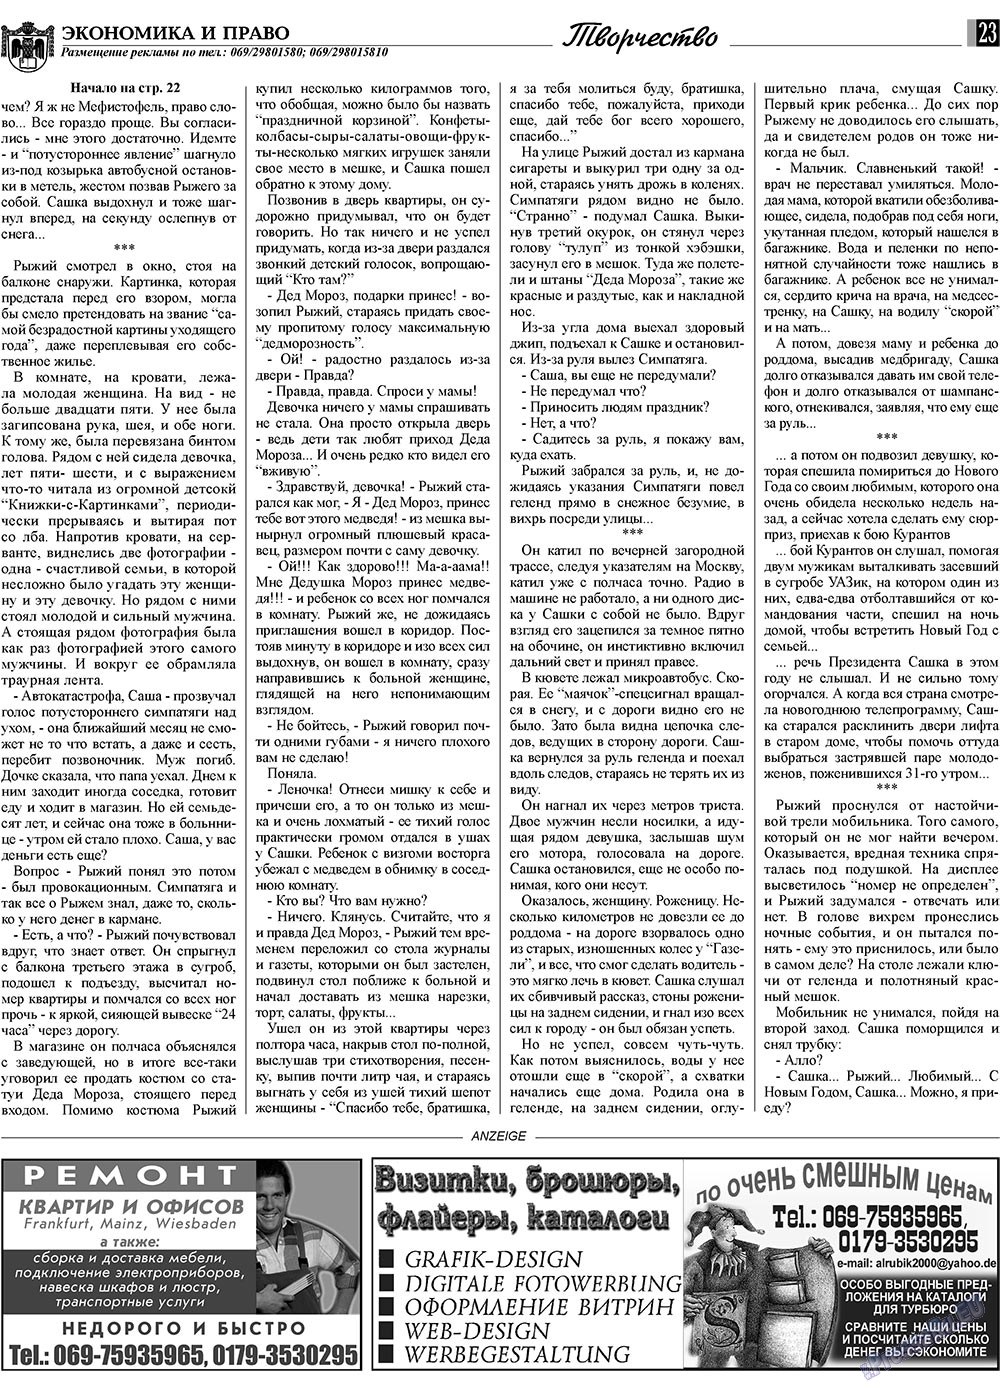 Экономика и право, газета. 2009 №1 стр.23